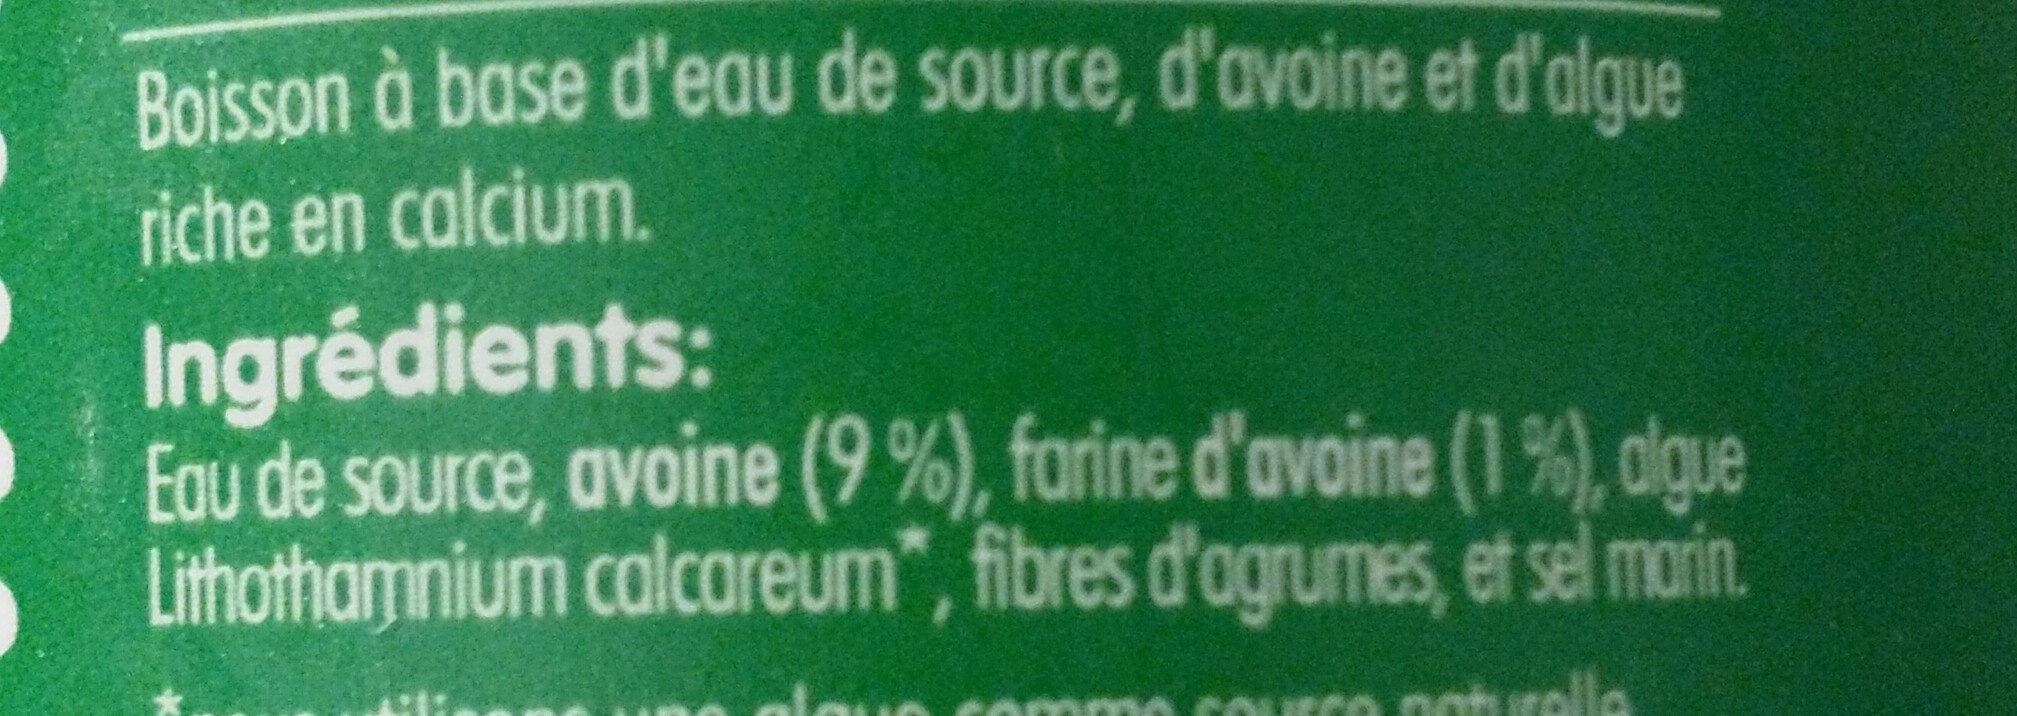 Boisson d’avoine - Ingrédients